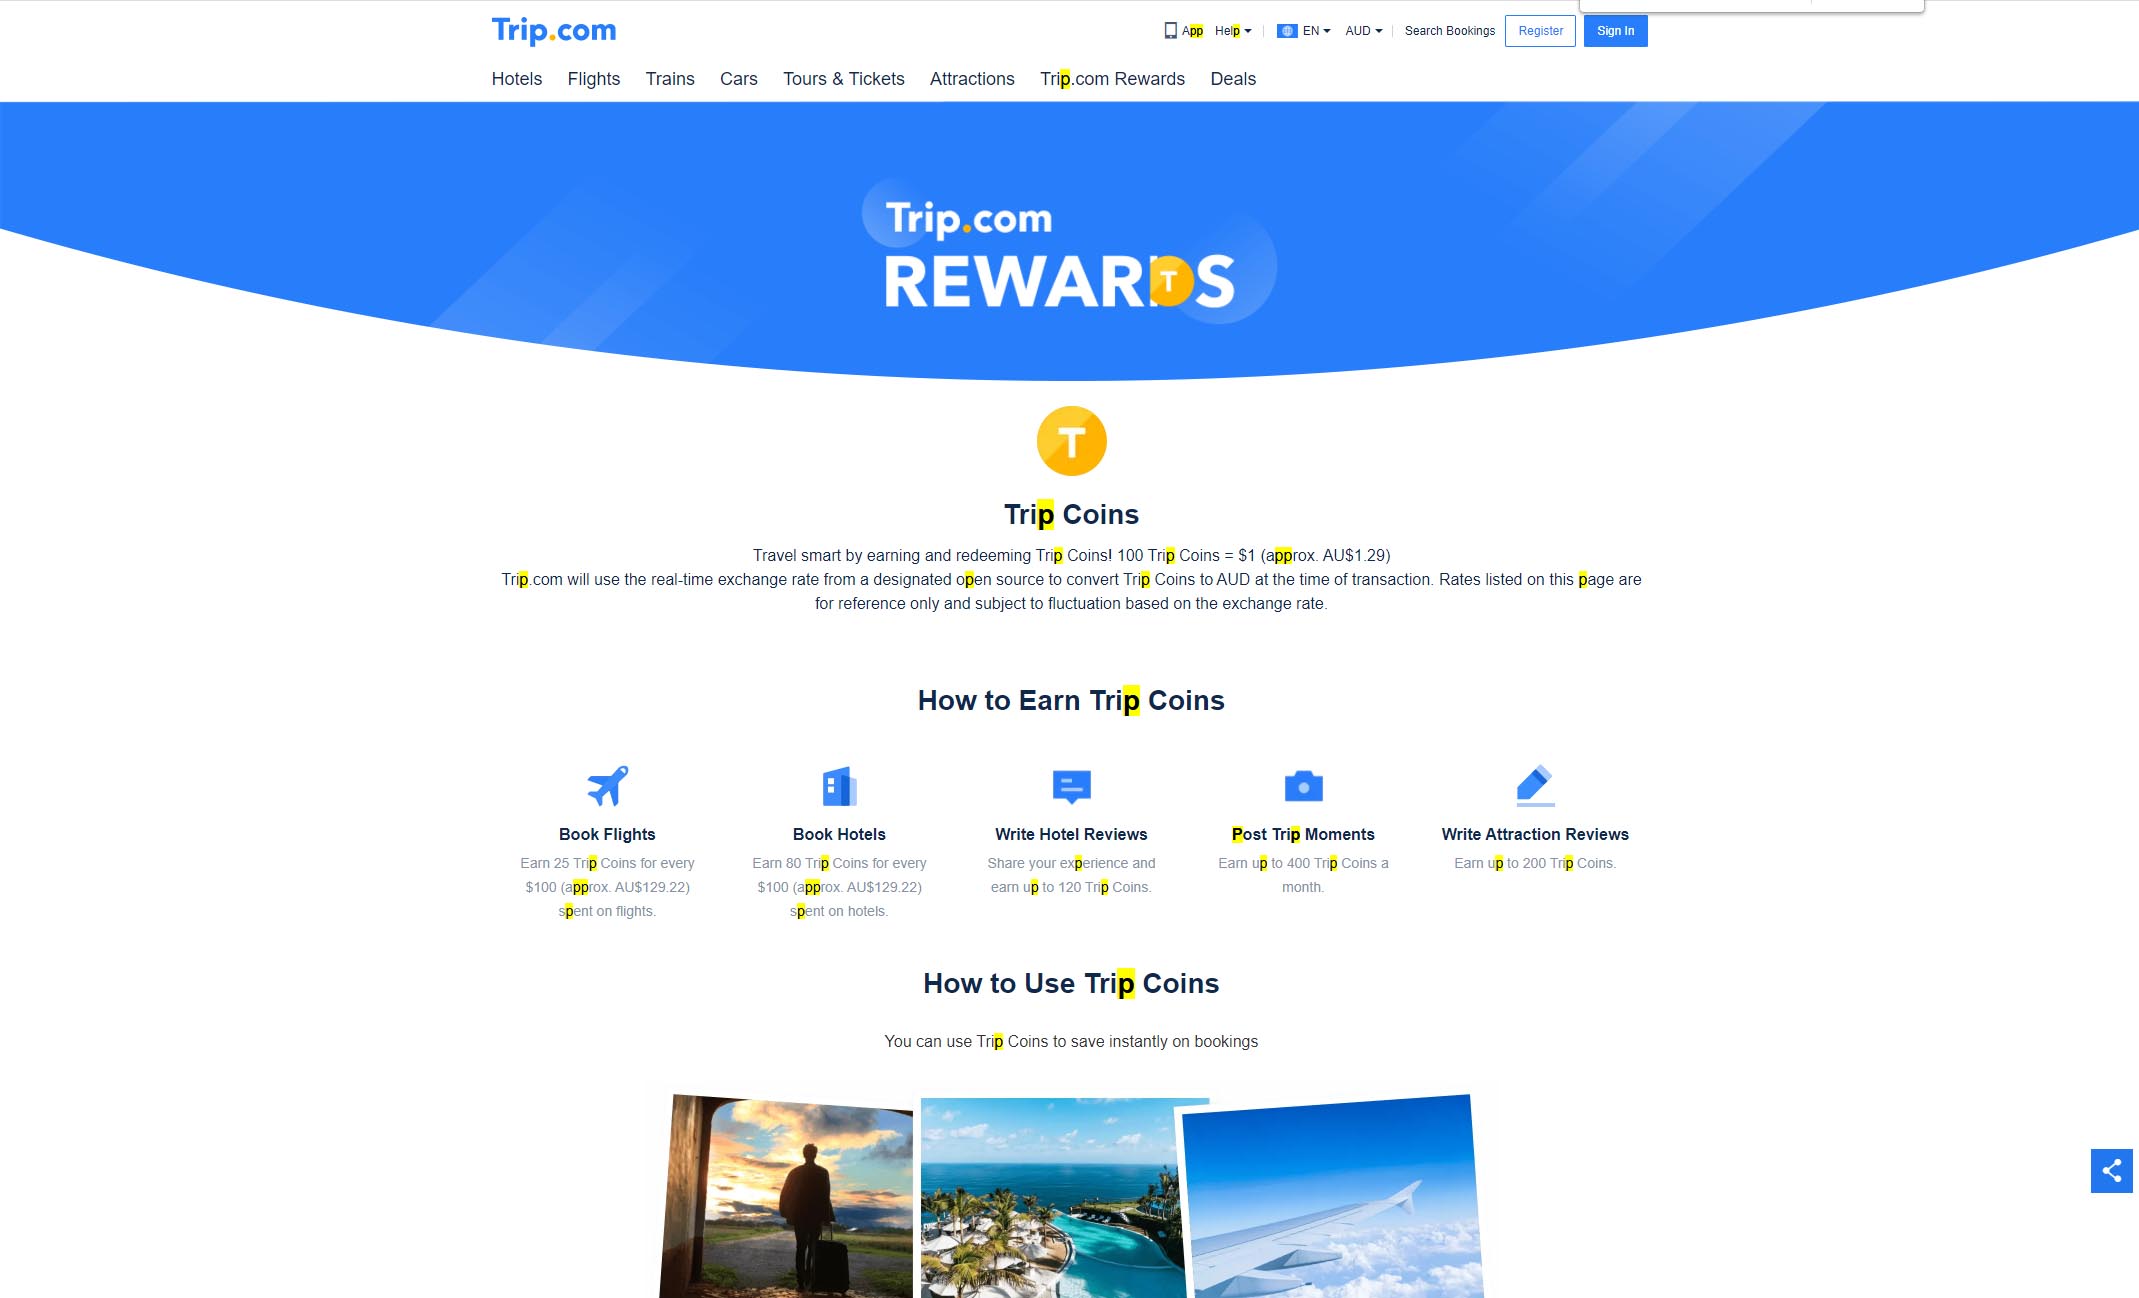 Trip.com Rewards